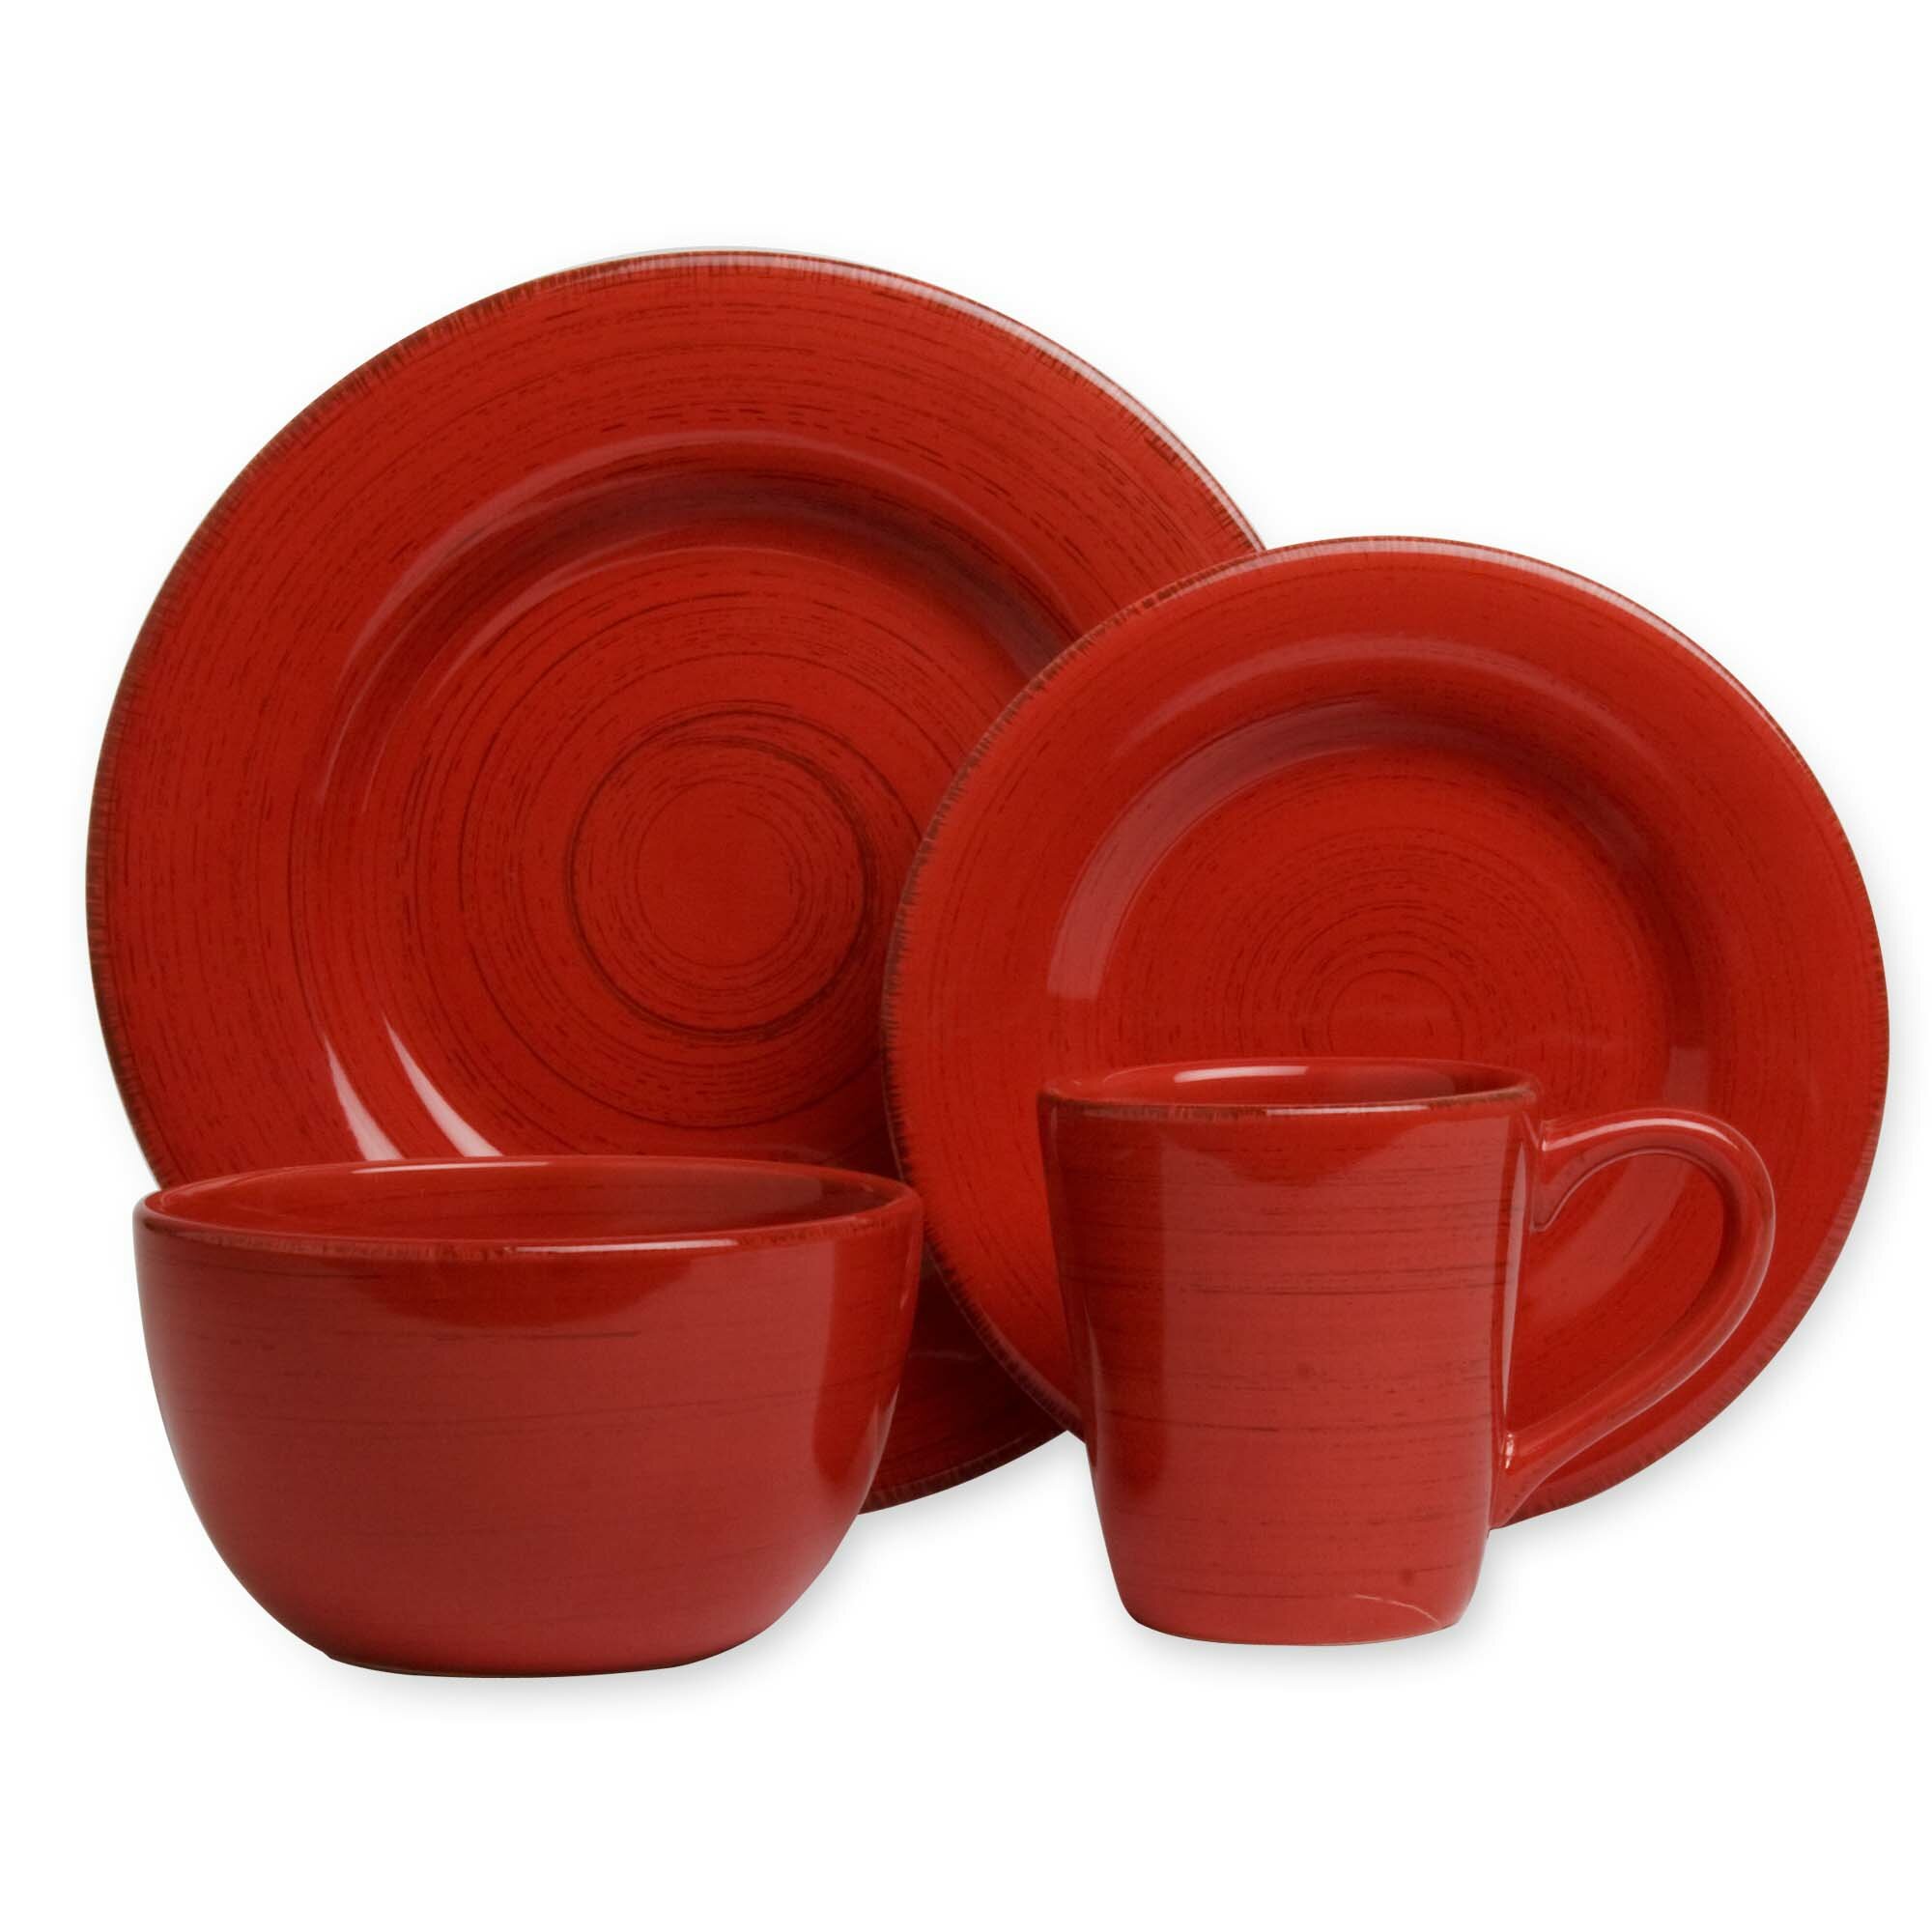 Купить красную посуду. Посуда красного цвета. Набор посуды красный. Красная керамическая посуда. Чайный набор красный.